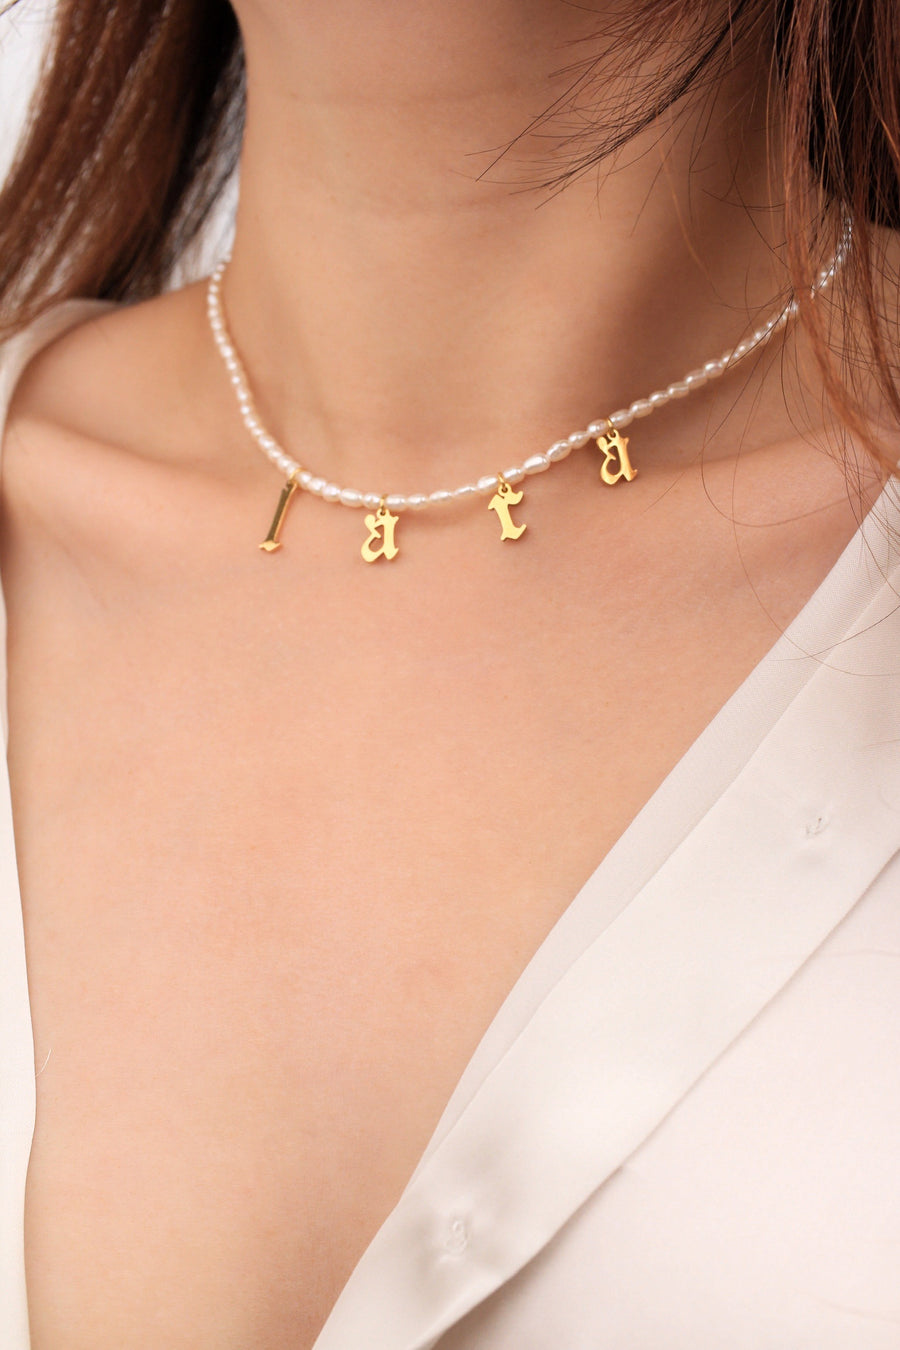 Aegis Gothic Alphabet Personalised Pearl Necklace